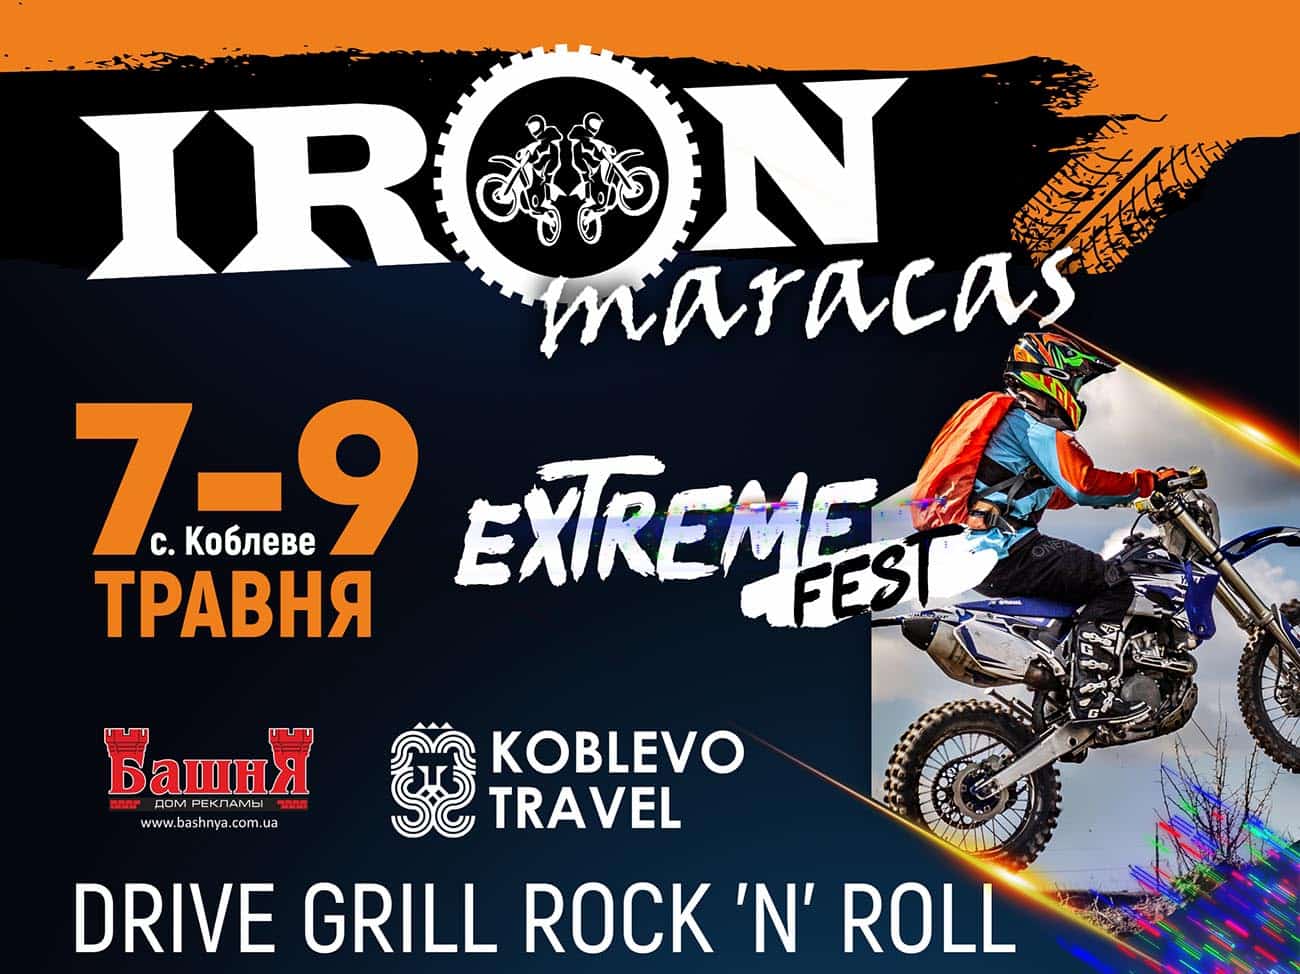 Фестиваль IRONmaracas Extreme Fest в Коблево